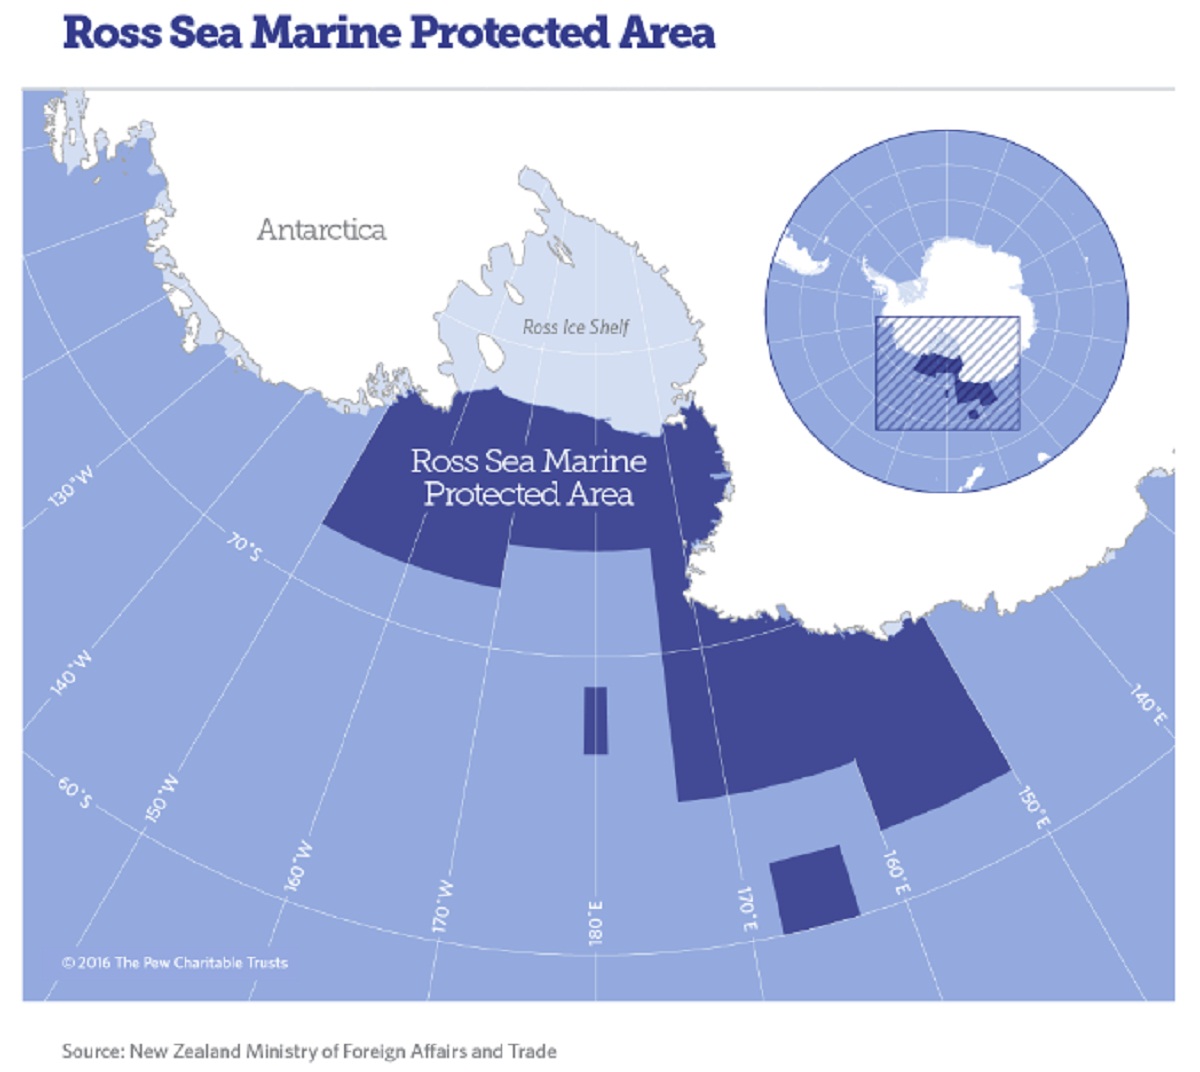 Representante chileno destaca la importancia de la nueva Área Marina Protegida del mar de Ross